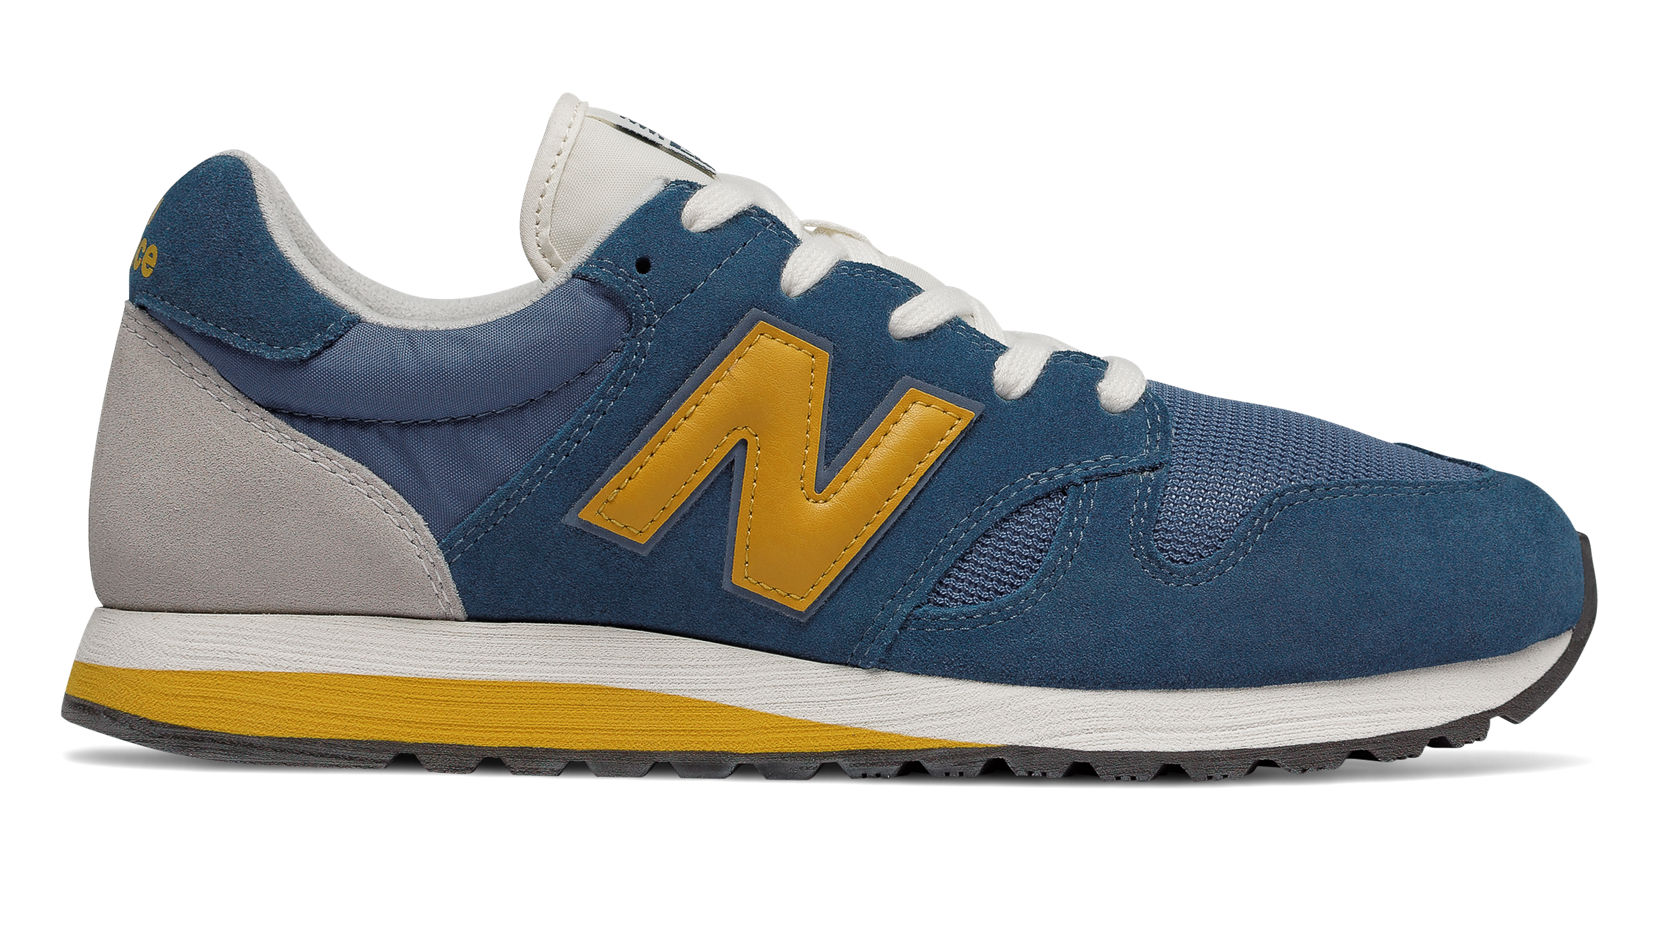 NB 520 70s Running, Dark Blue with Yellow